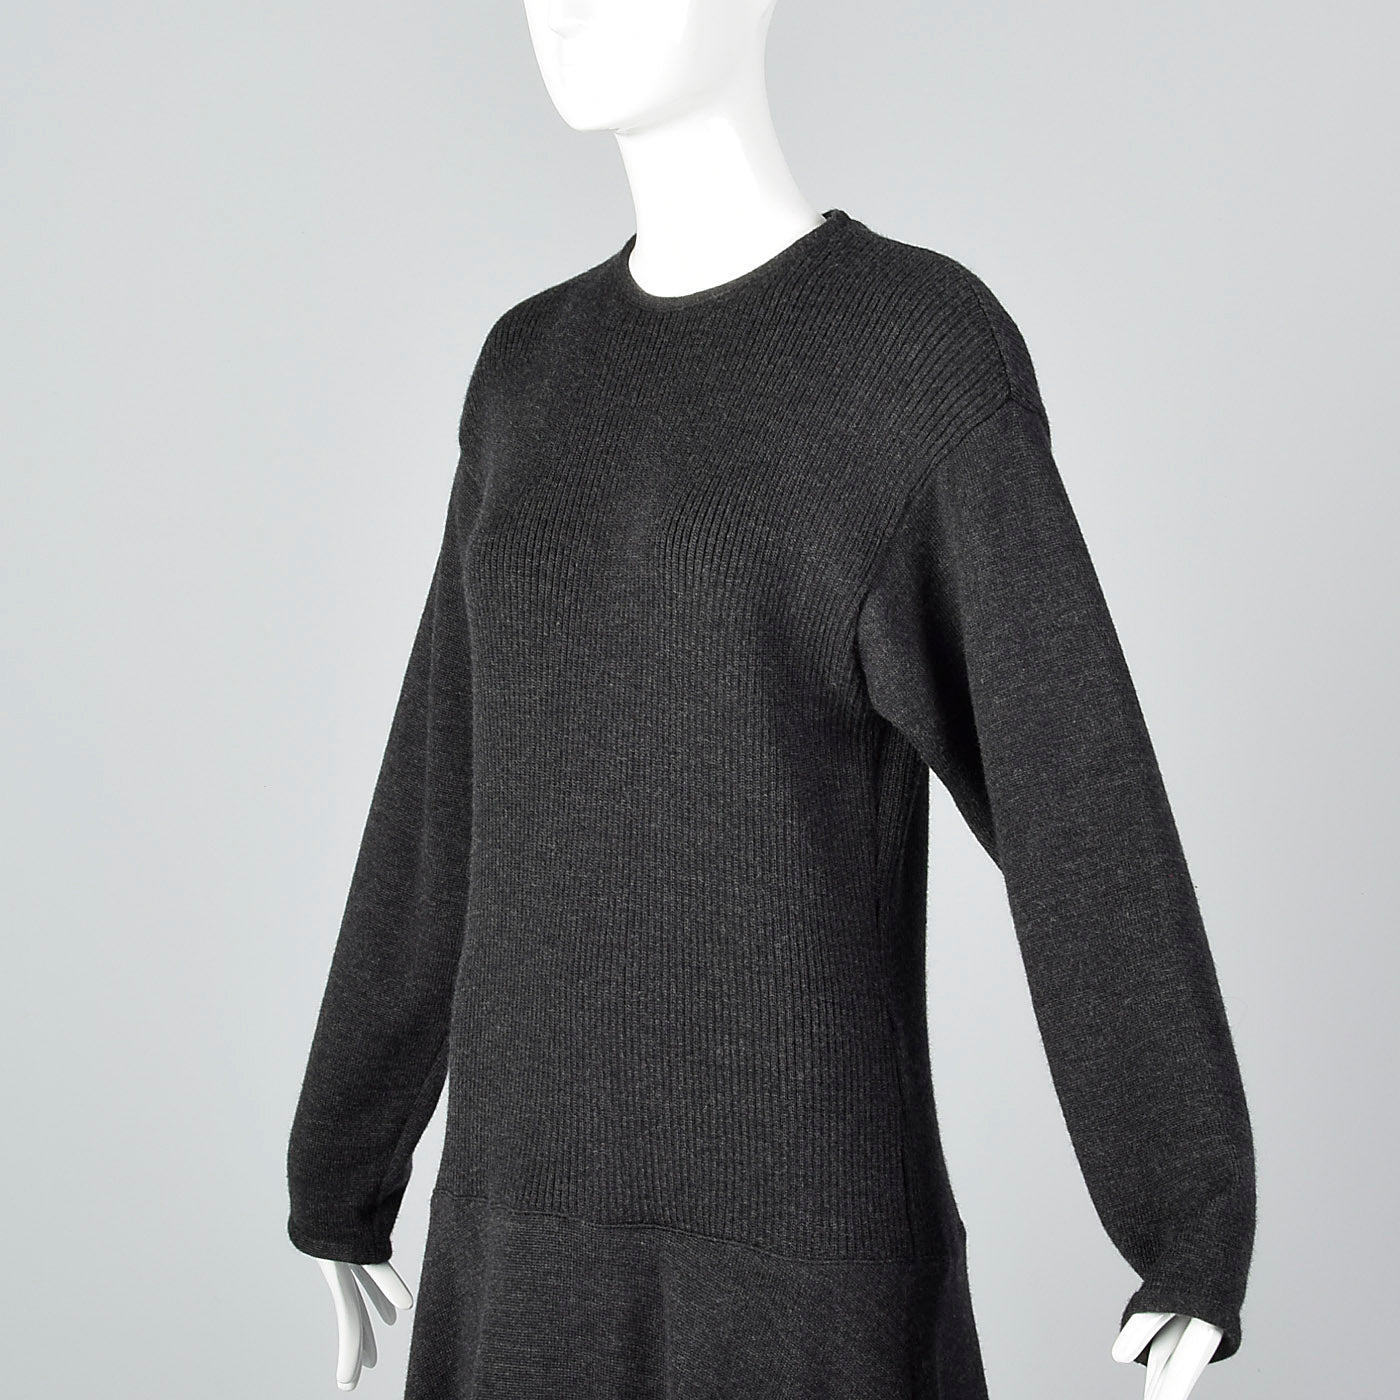 1970s Lilli Ann I. Magnin Gray Sweater Dress